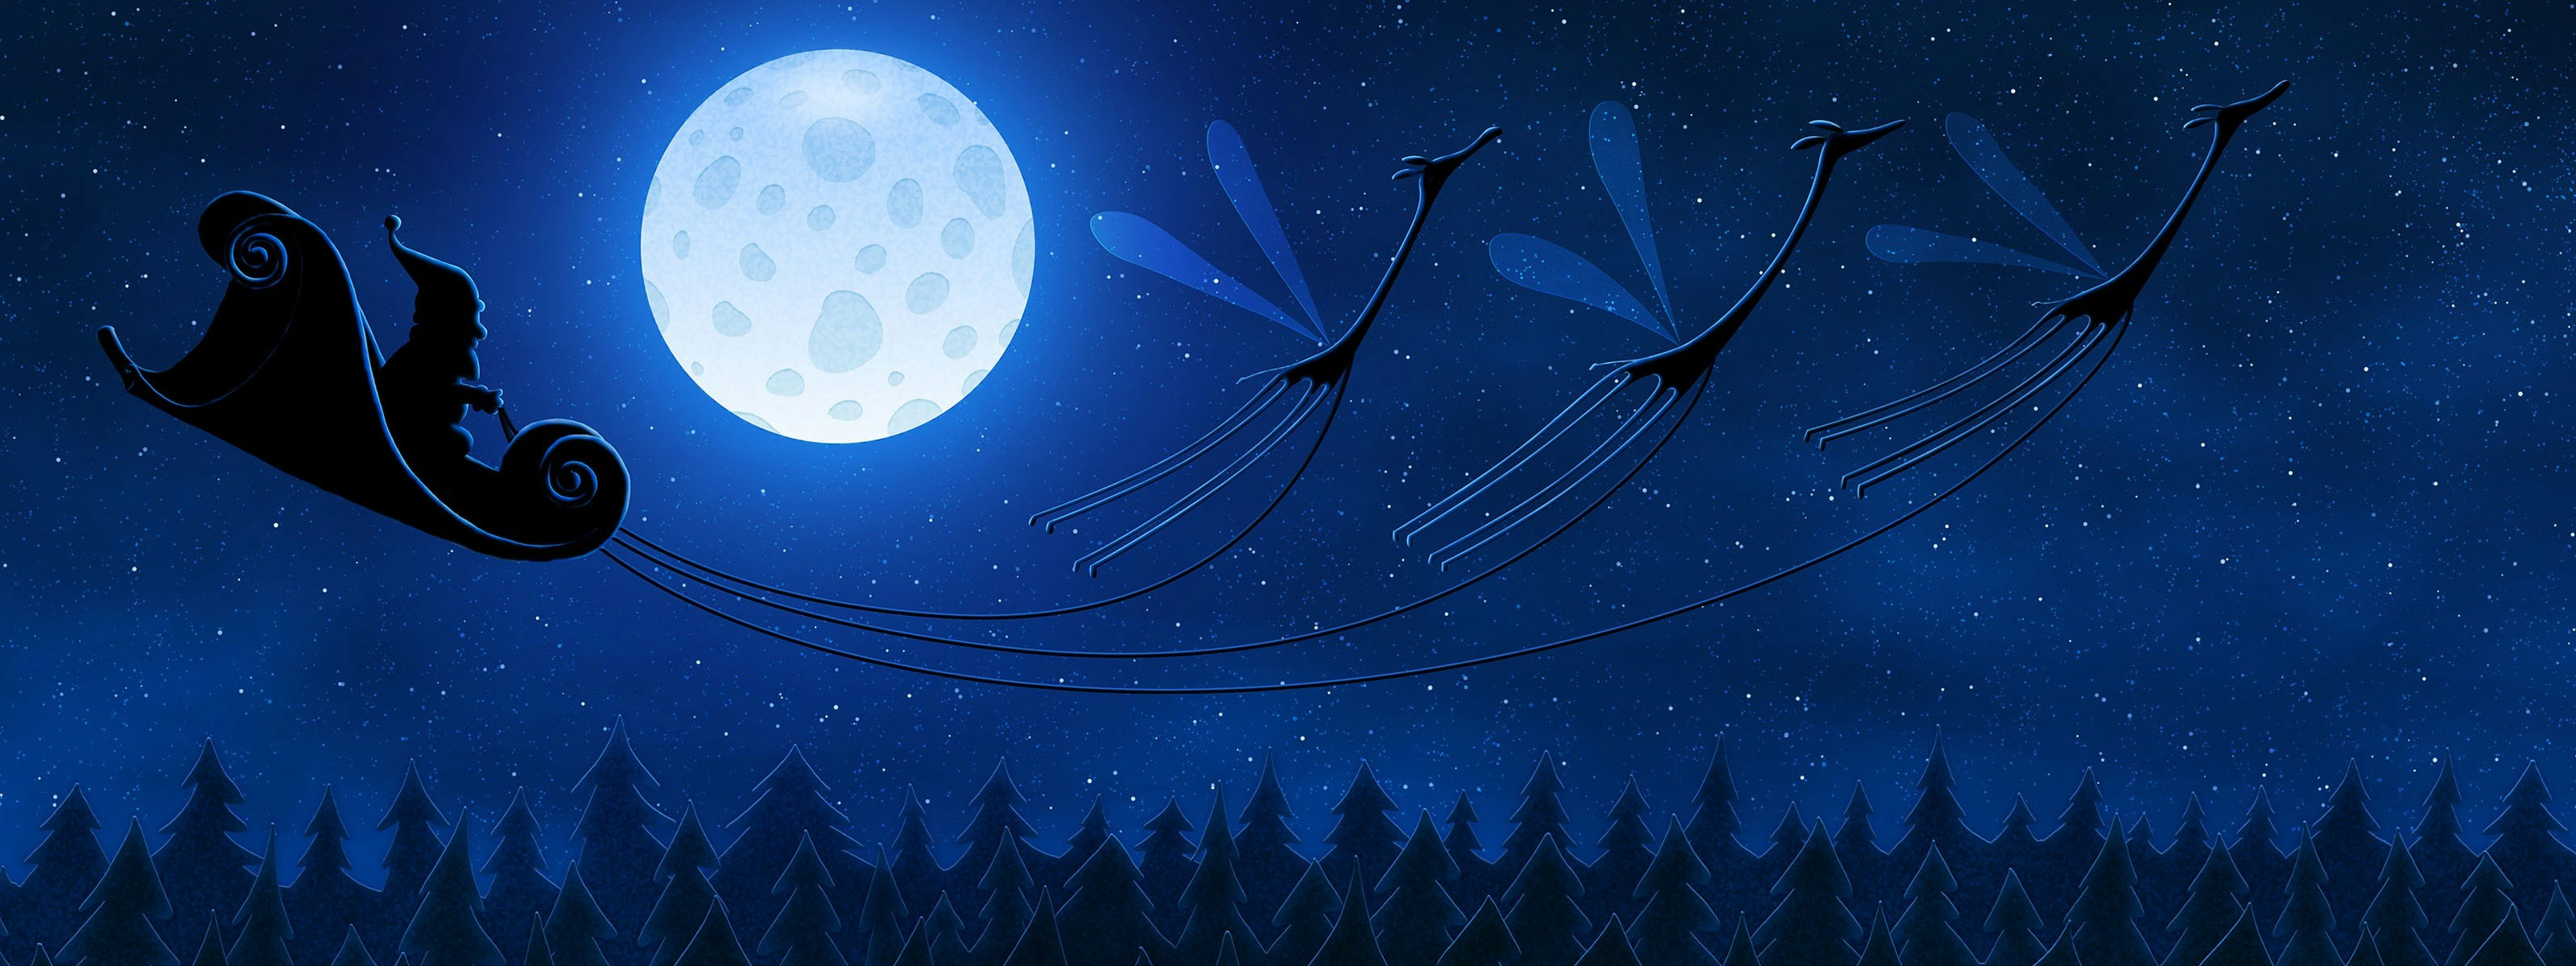 3d обои Санта Клаус несётся над ёлочками в звёздном небе на санях, в которые запряжены крылатые олени  новый год # 65455